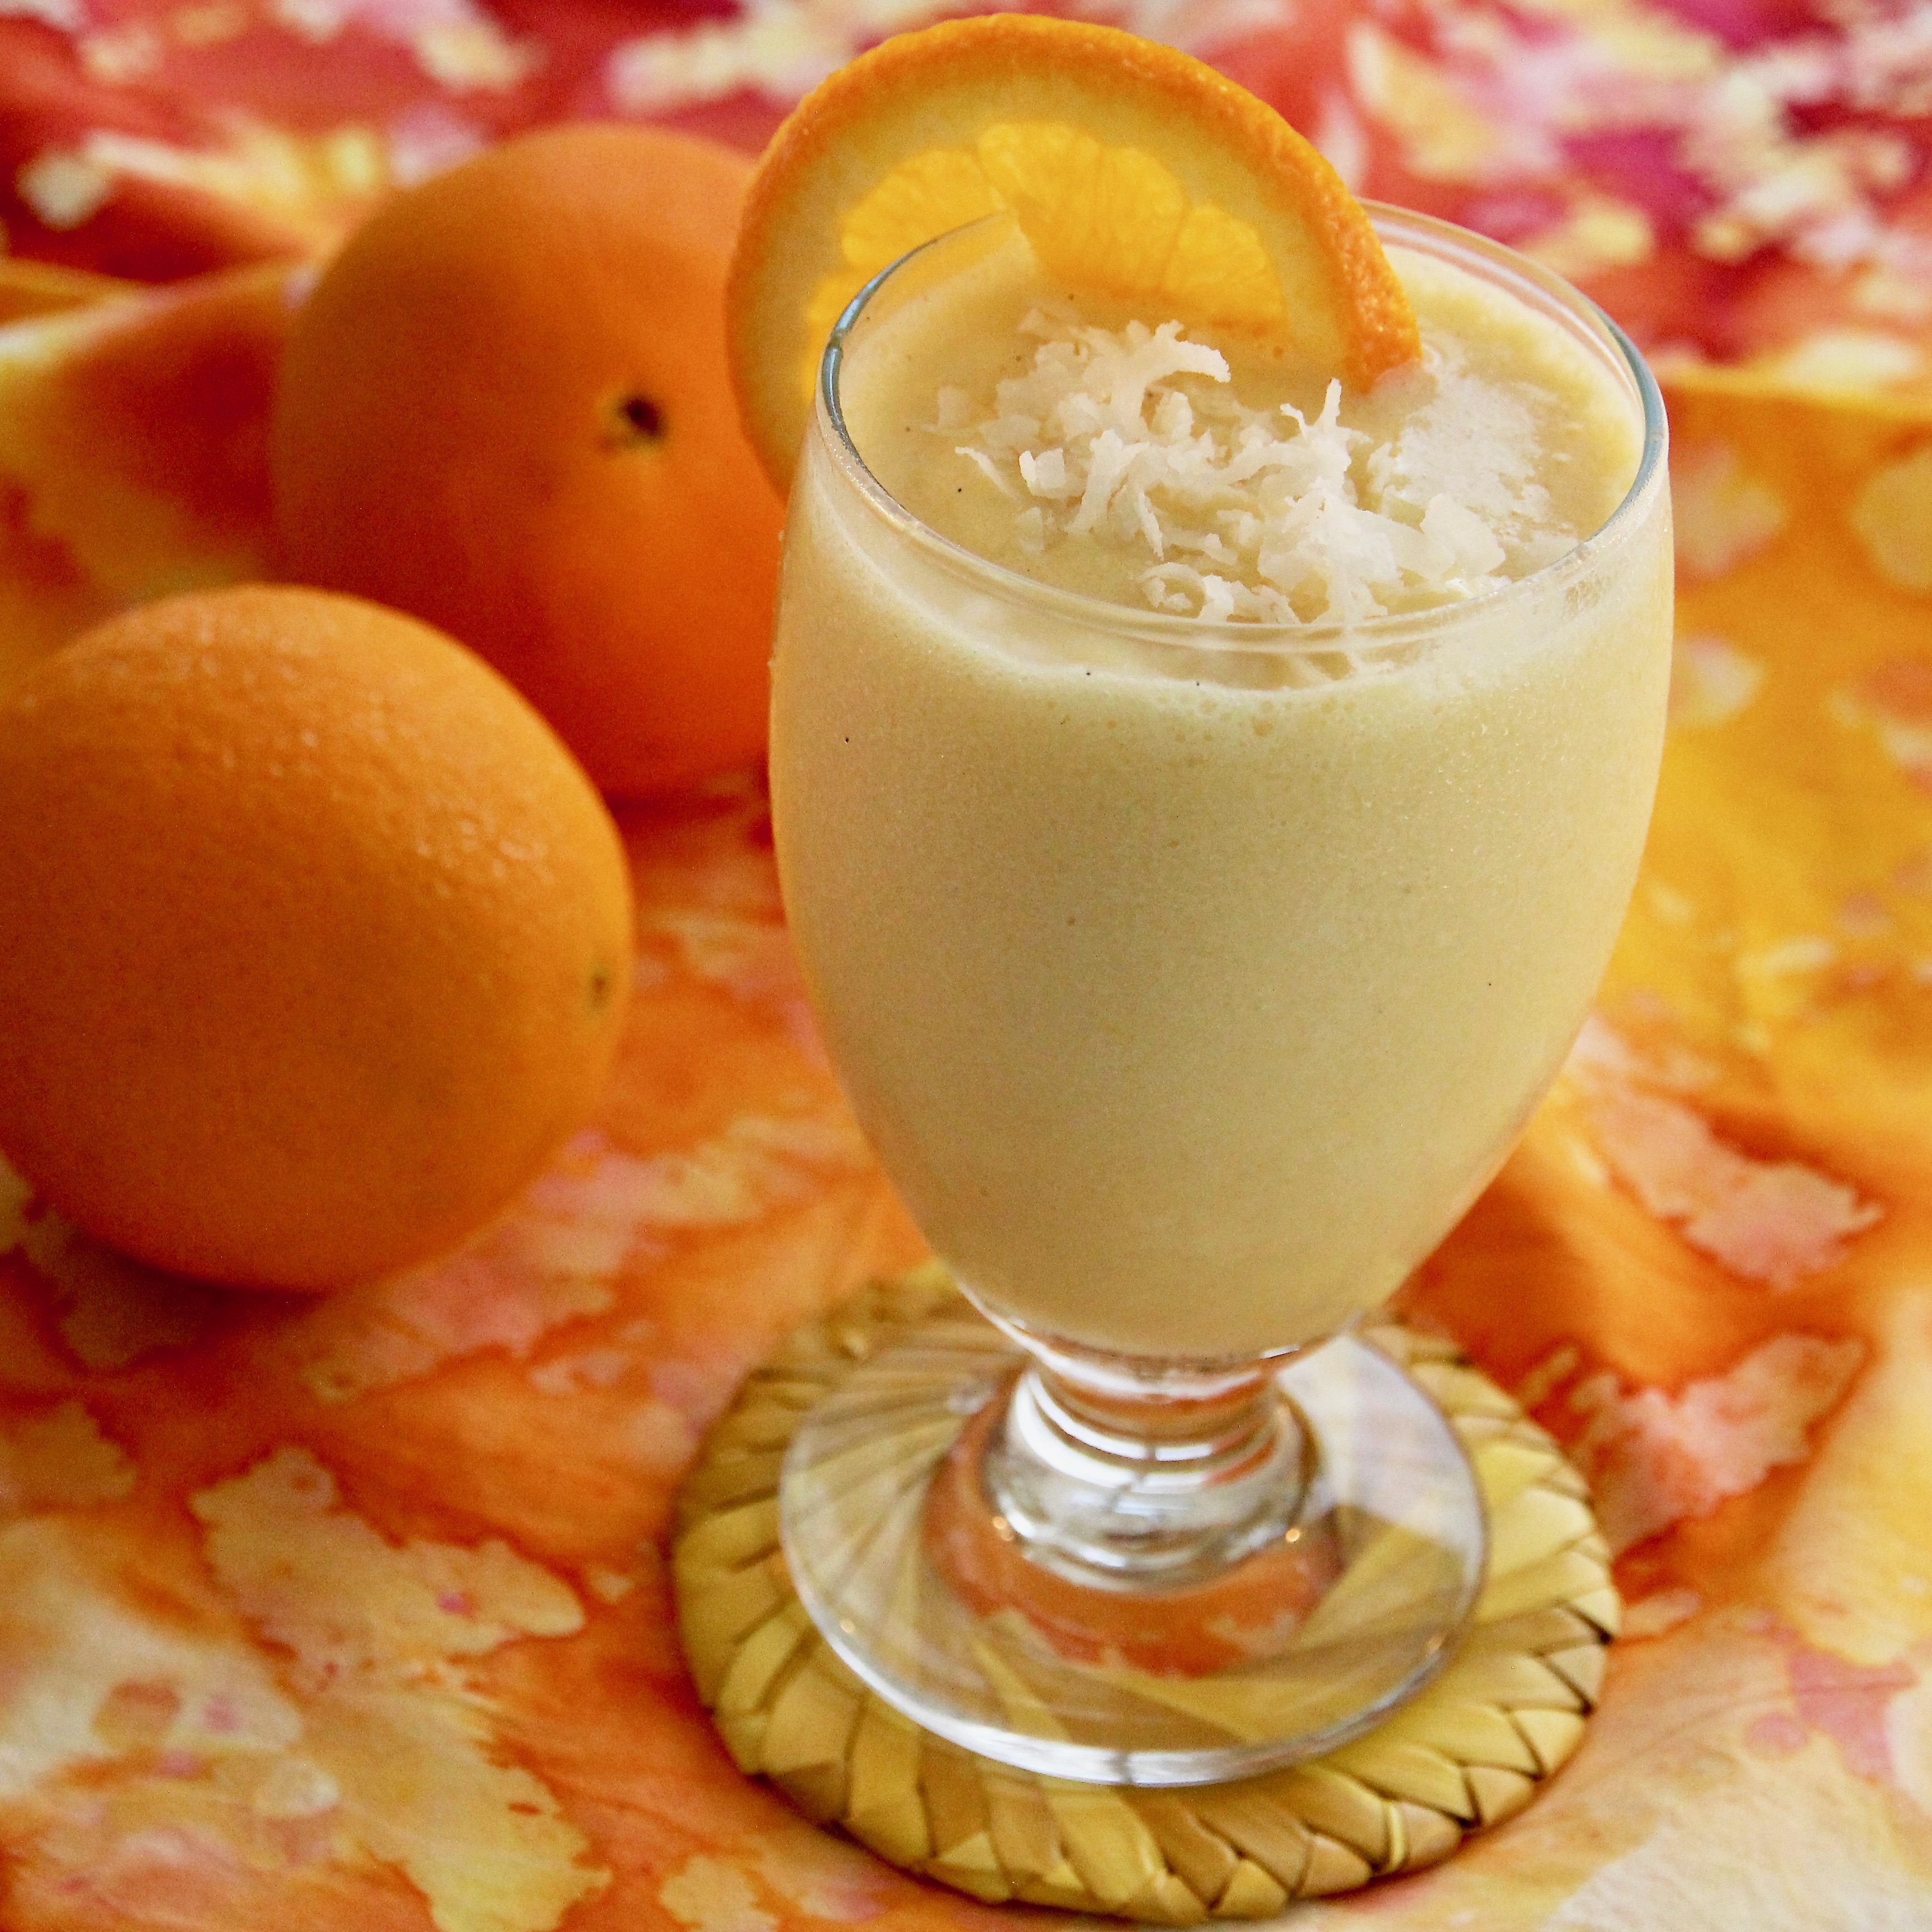 Creamy Orange-Coconut Smoothie